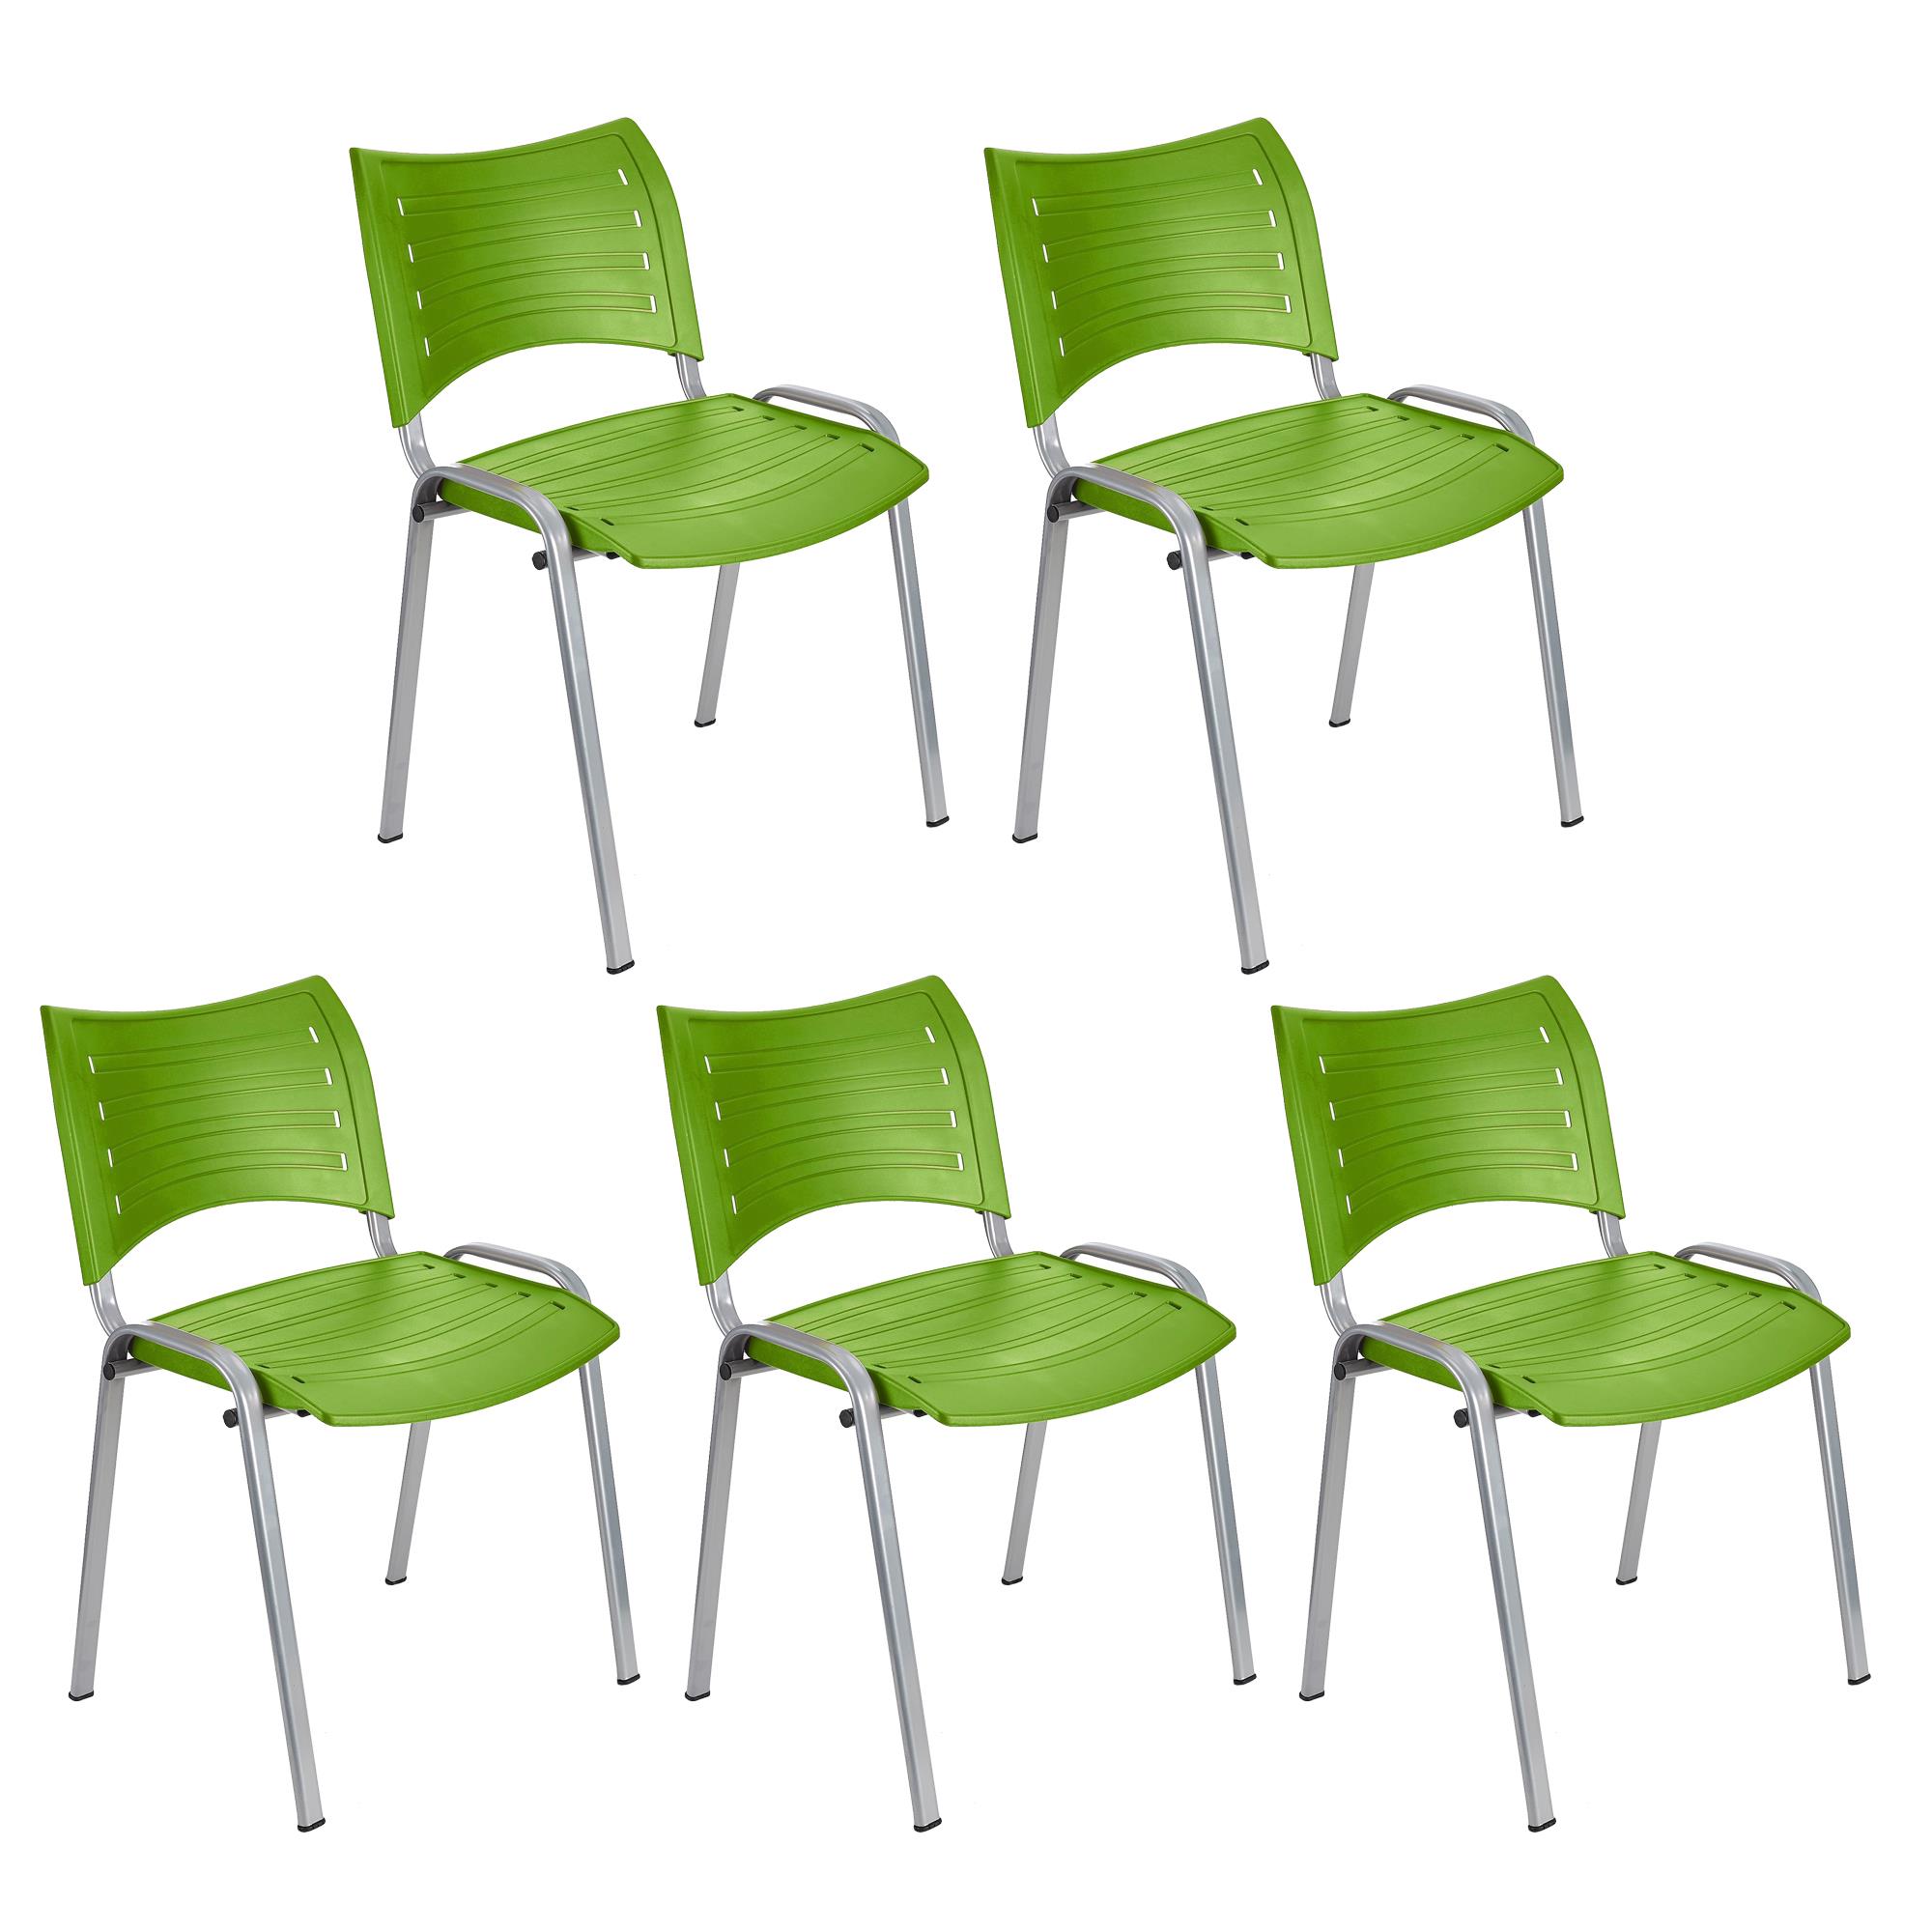 Lote 5 Cadeiras de Visita ELVA, Confortável e Prática, Pernas Cinza, Cor Verde